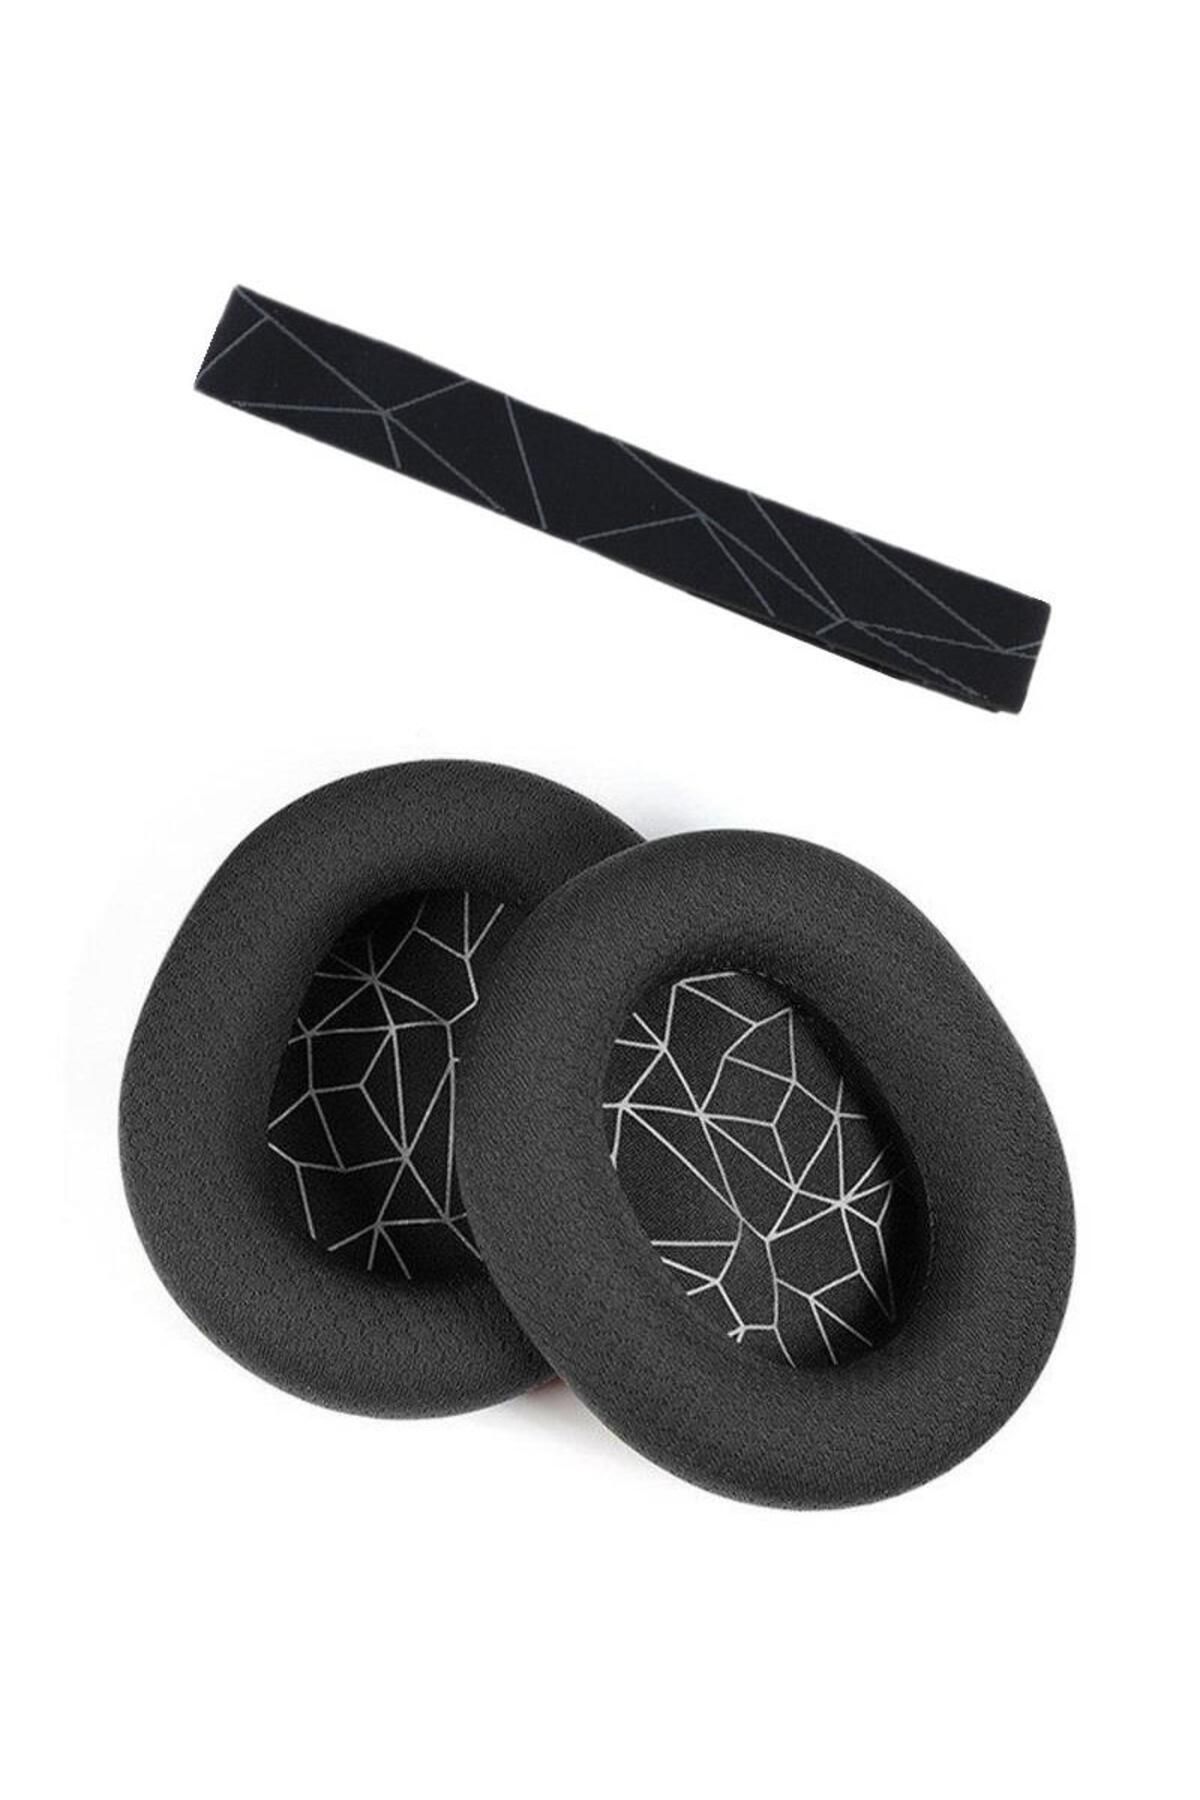 Schulzz Arctis 3 5 Yedek Kafa Bandı Ve Kulaklık Pedi Set Kulaklık Yastığı Süngeri Headband